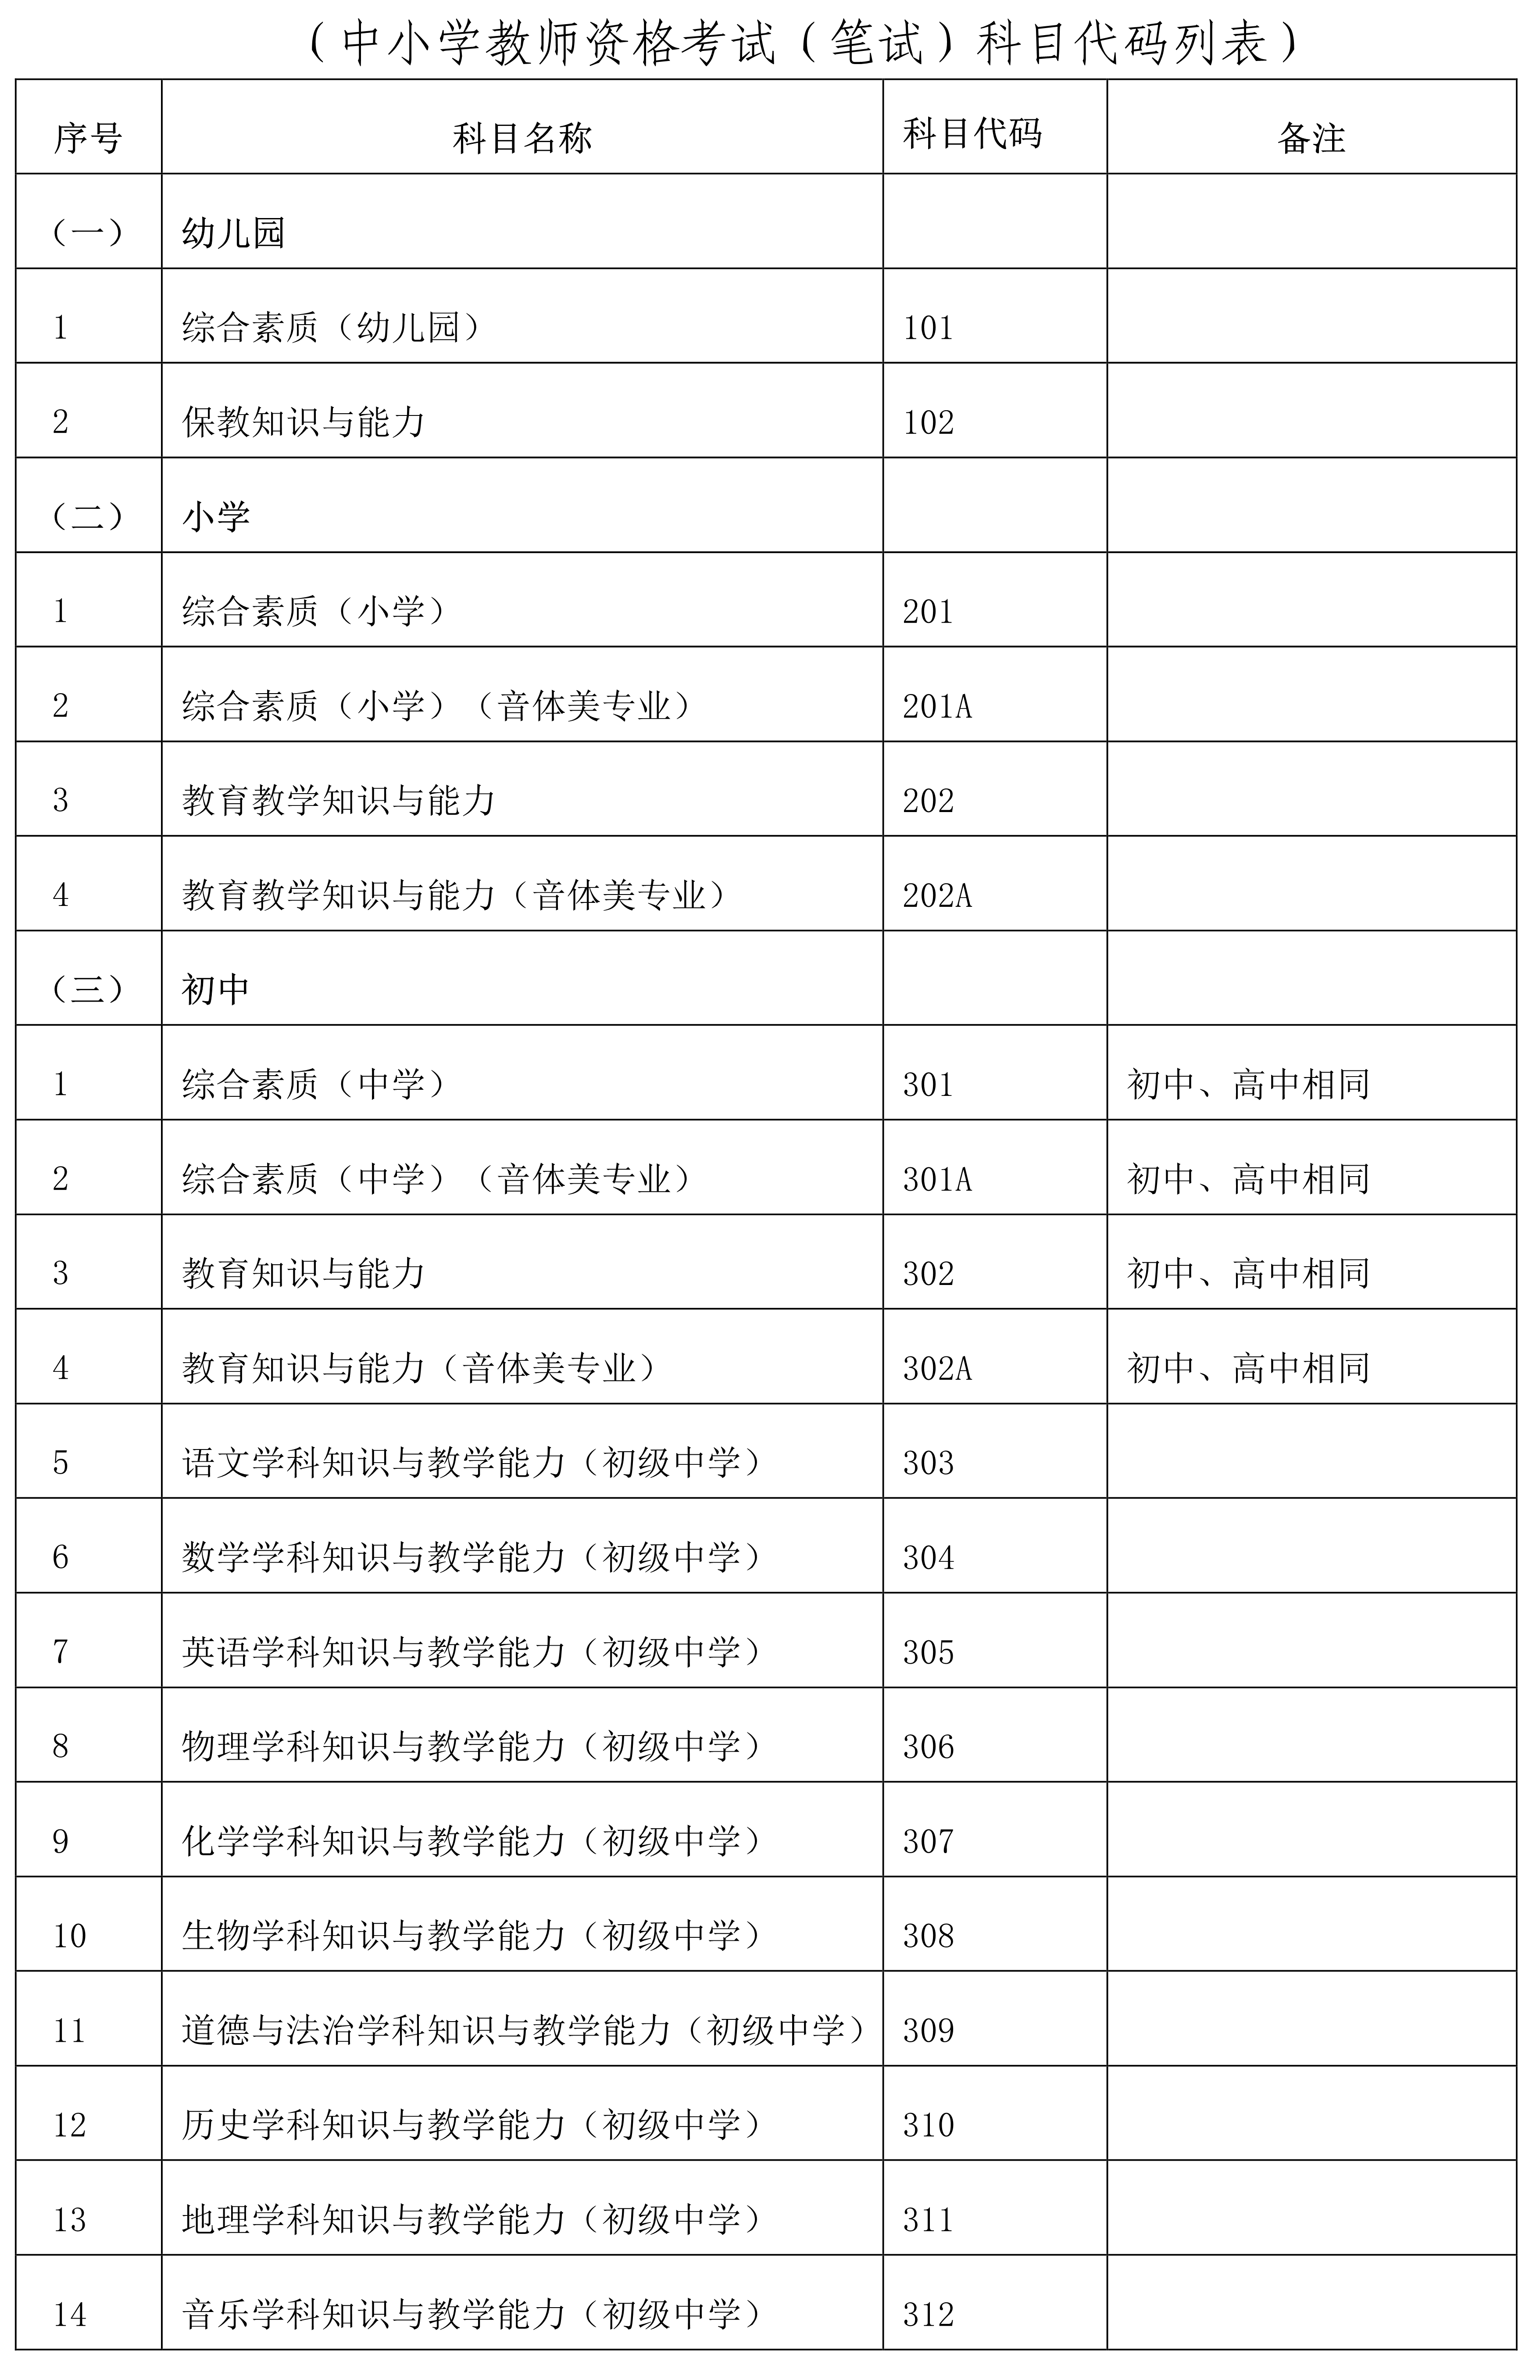 海南省2022年下半年中小学教师资格考试笔试报名公告